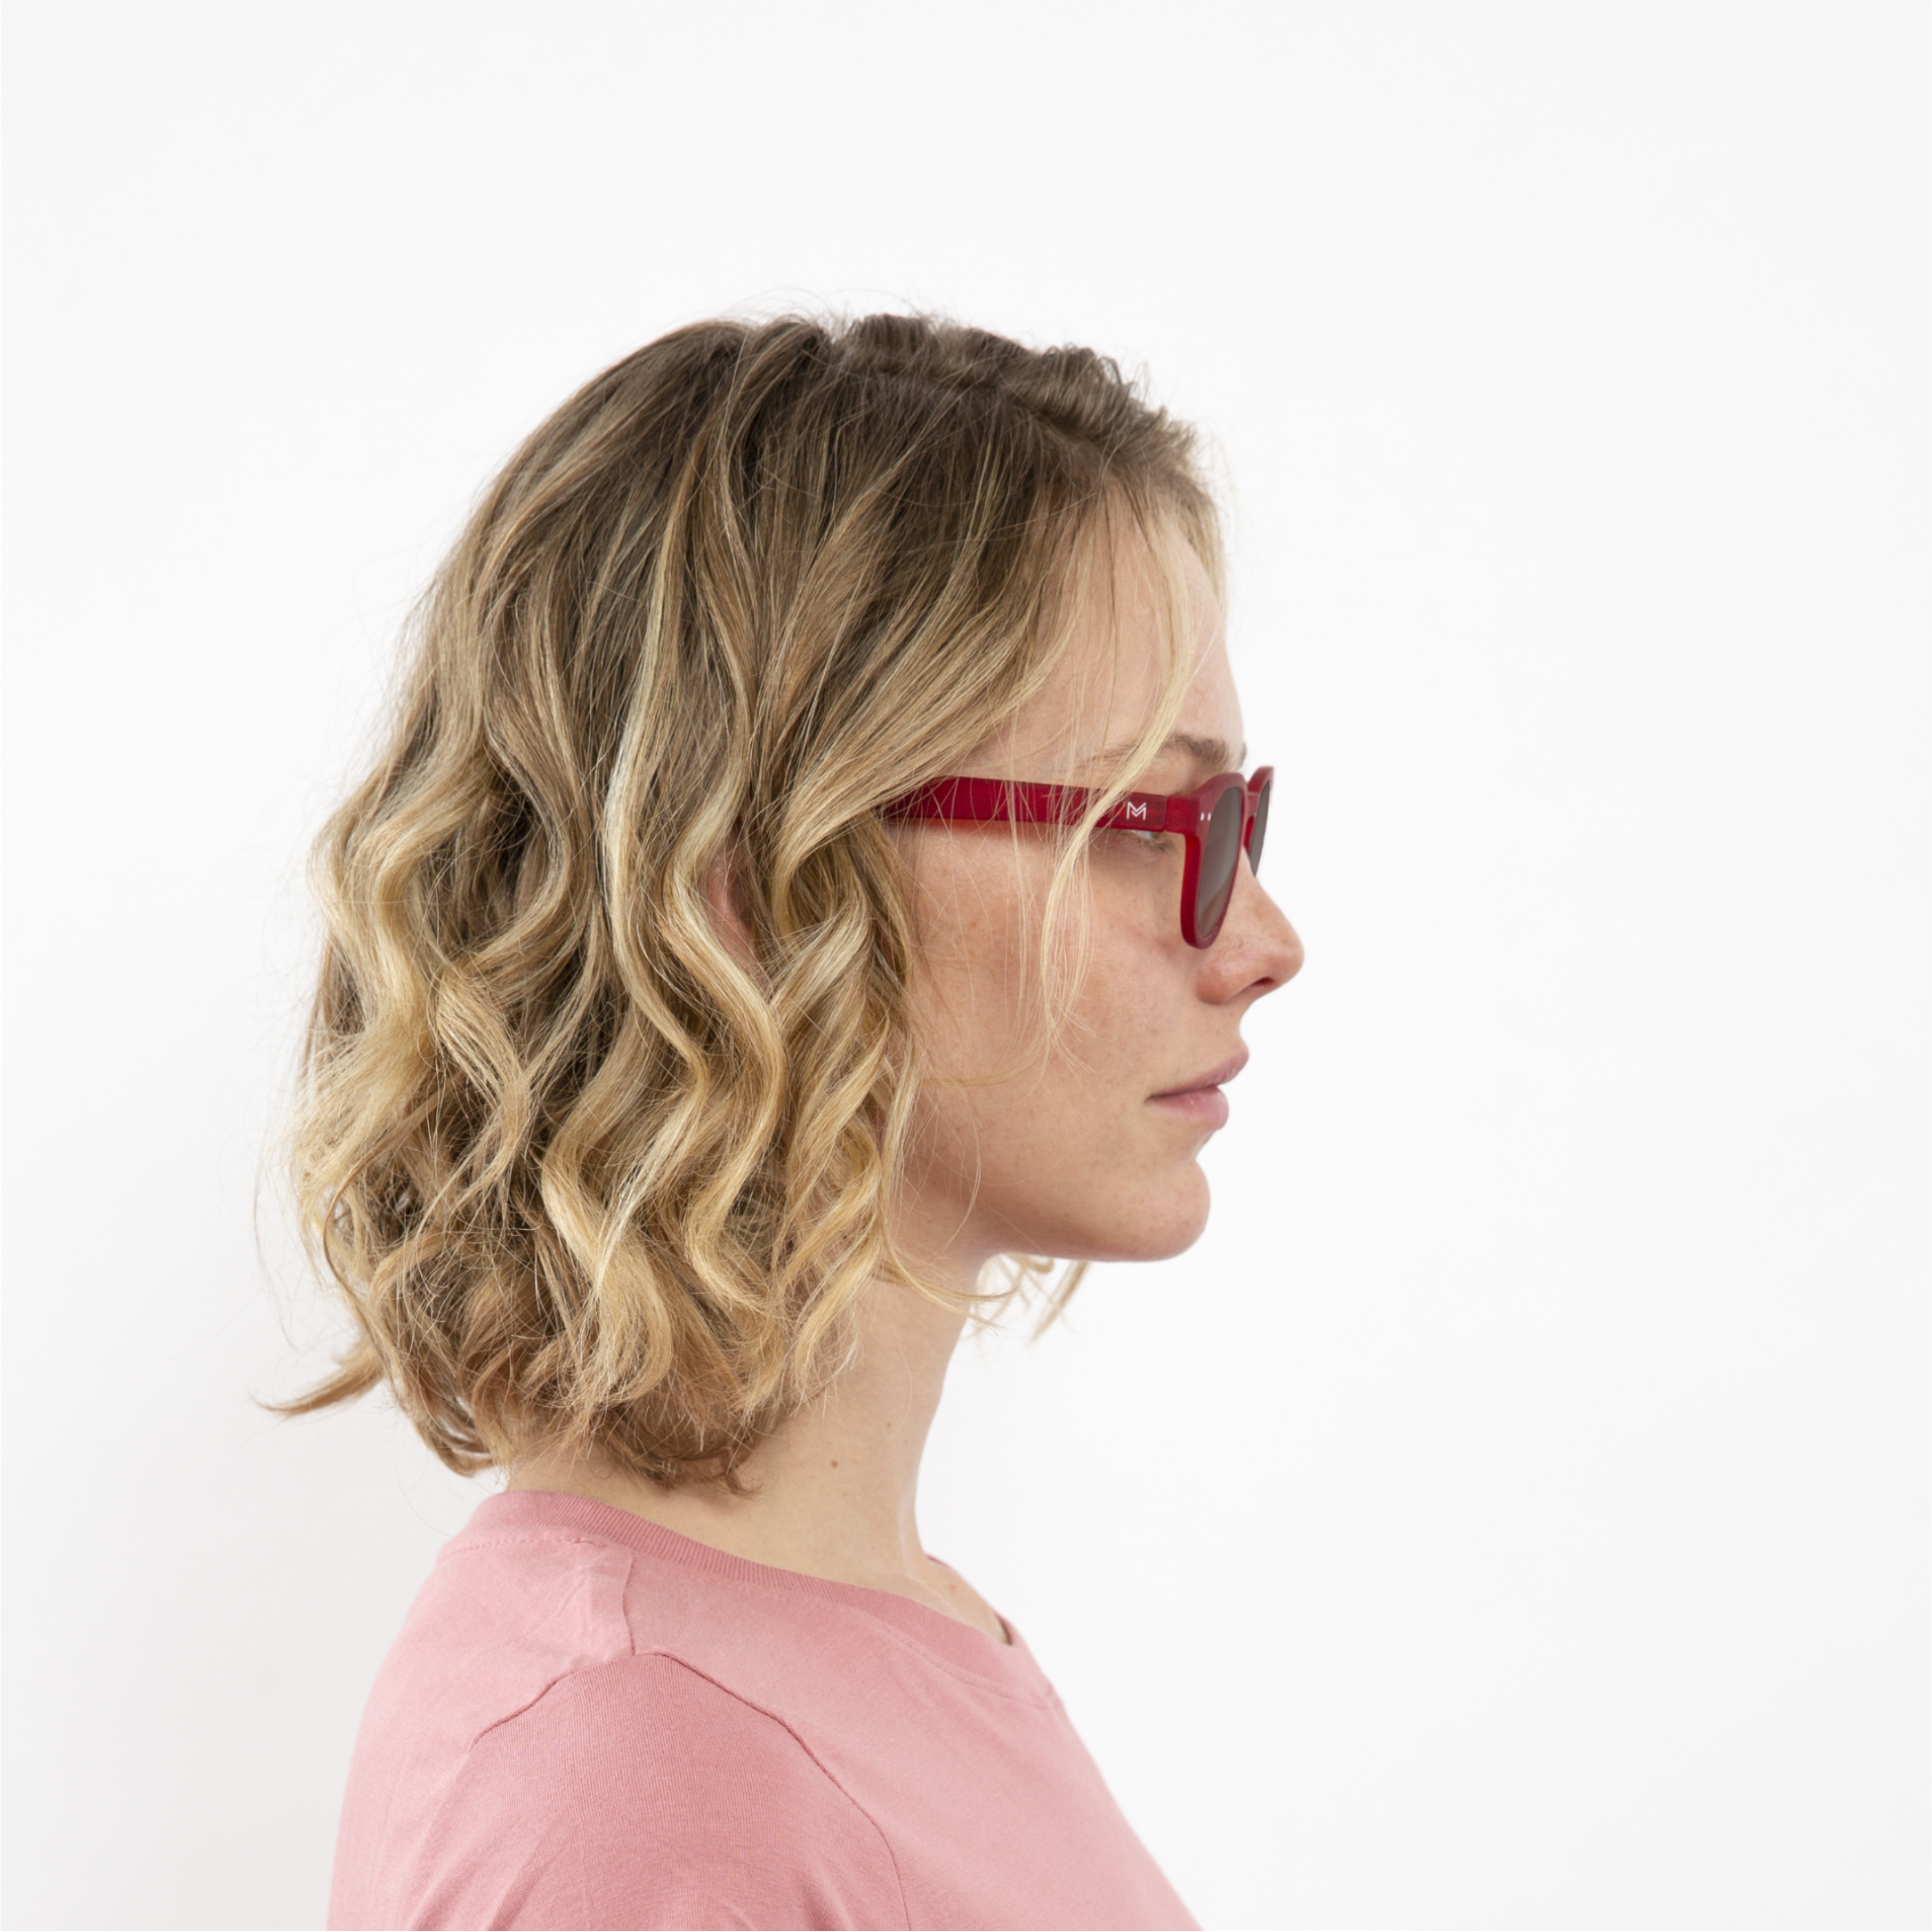 ochelari heliomati si tranzitie lentile maro femei anton rosie profil rama